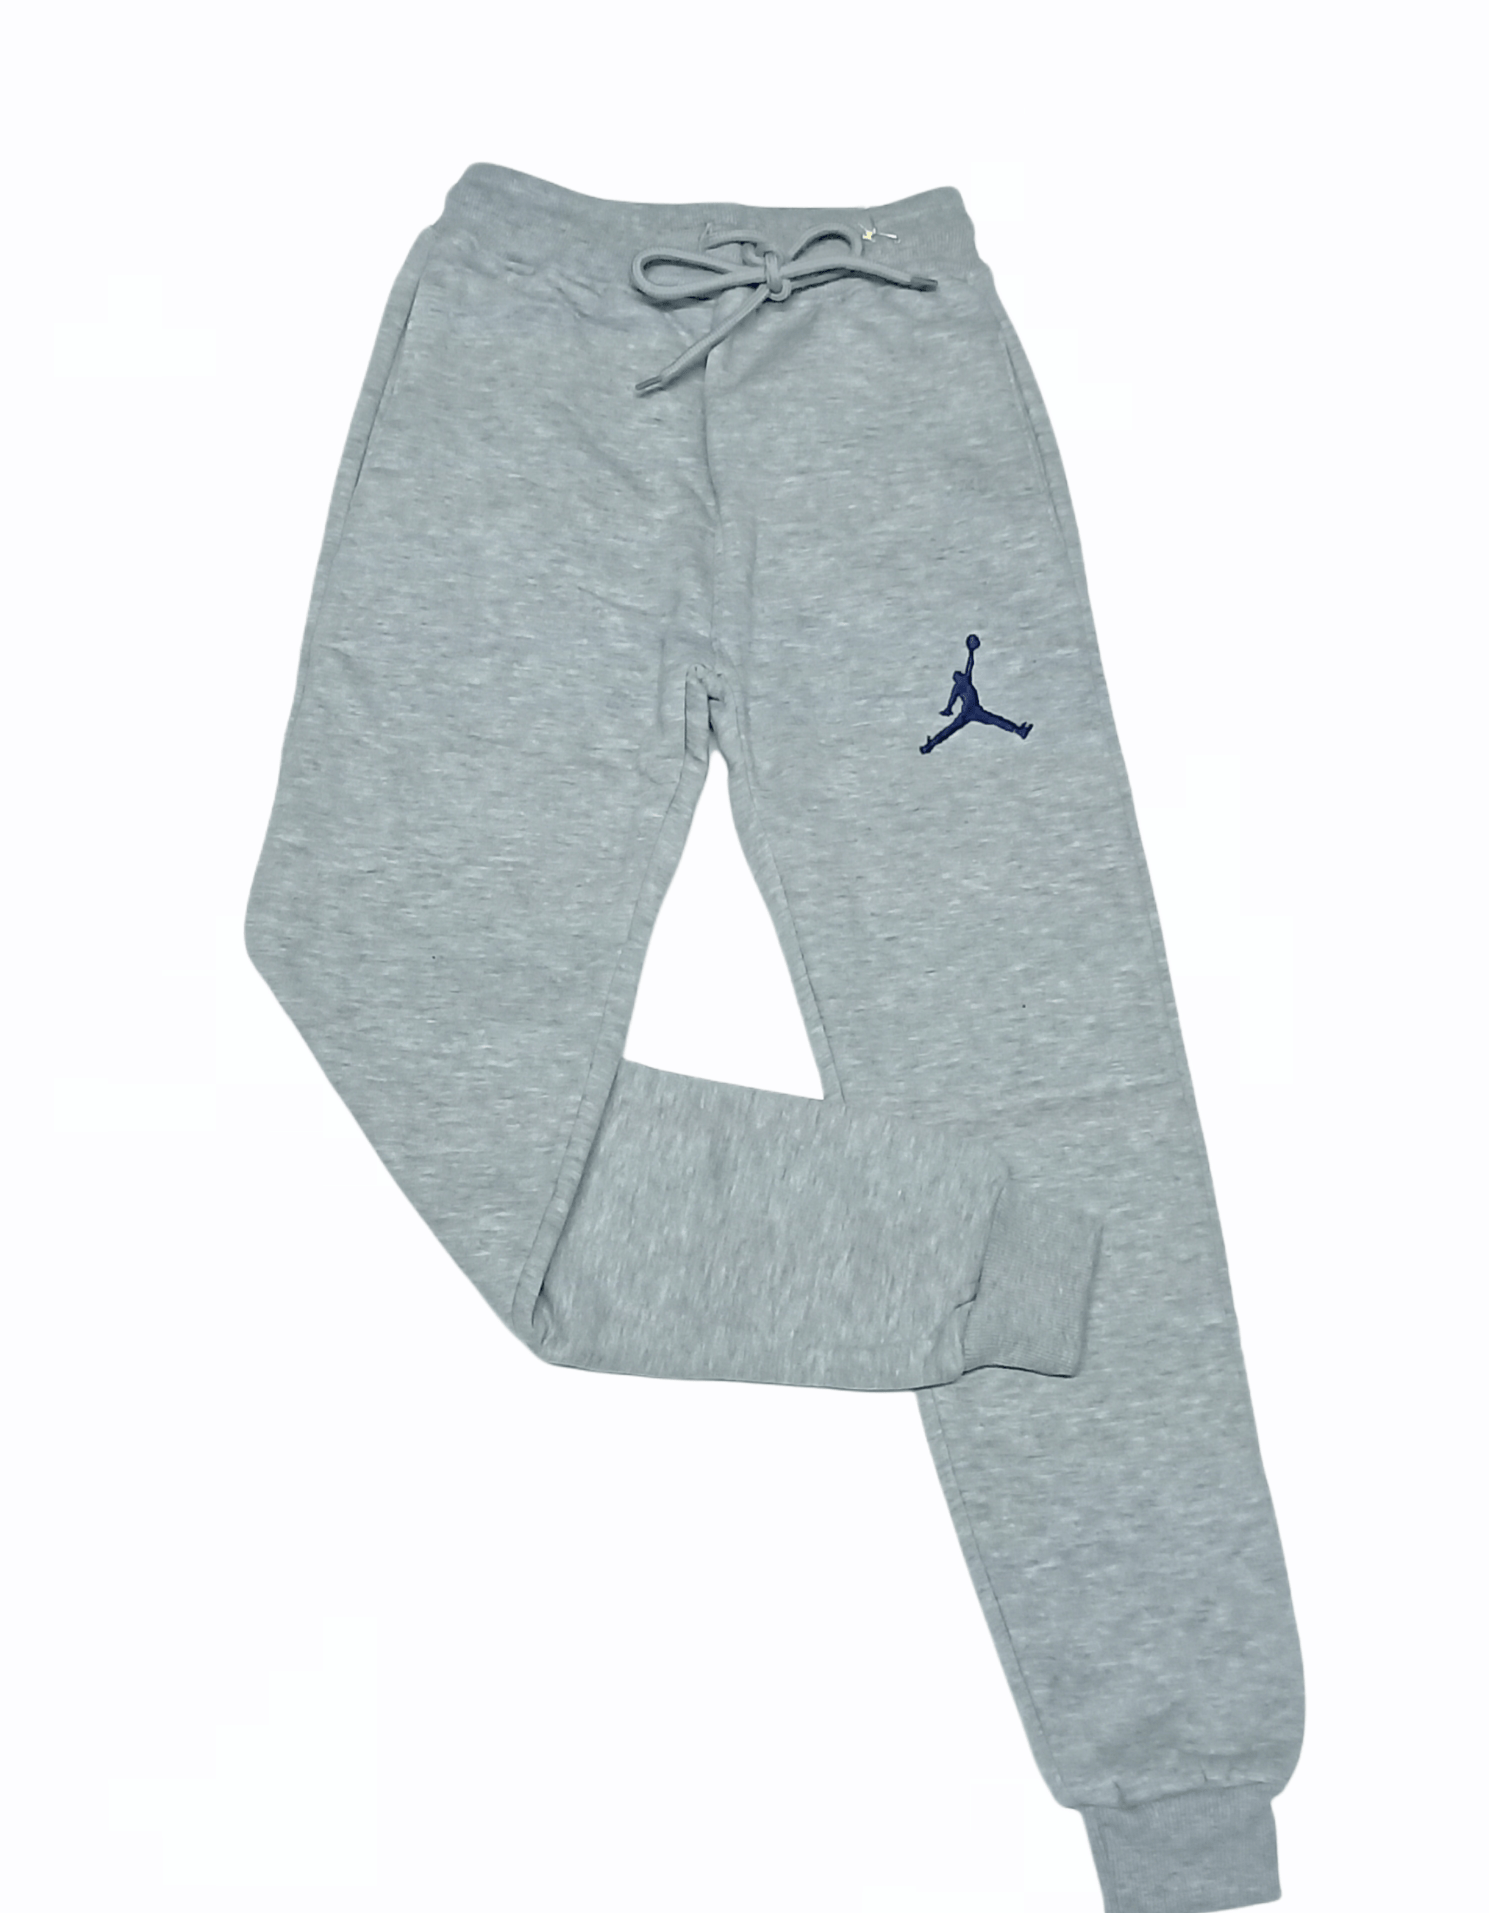 ElOutlet Pants Boy Jordan Pants - Grey